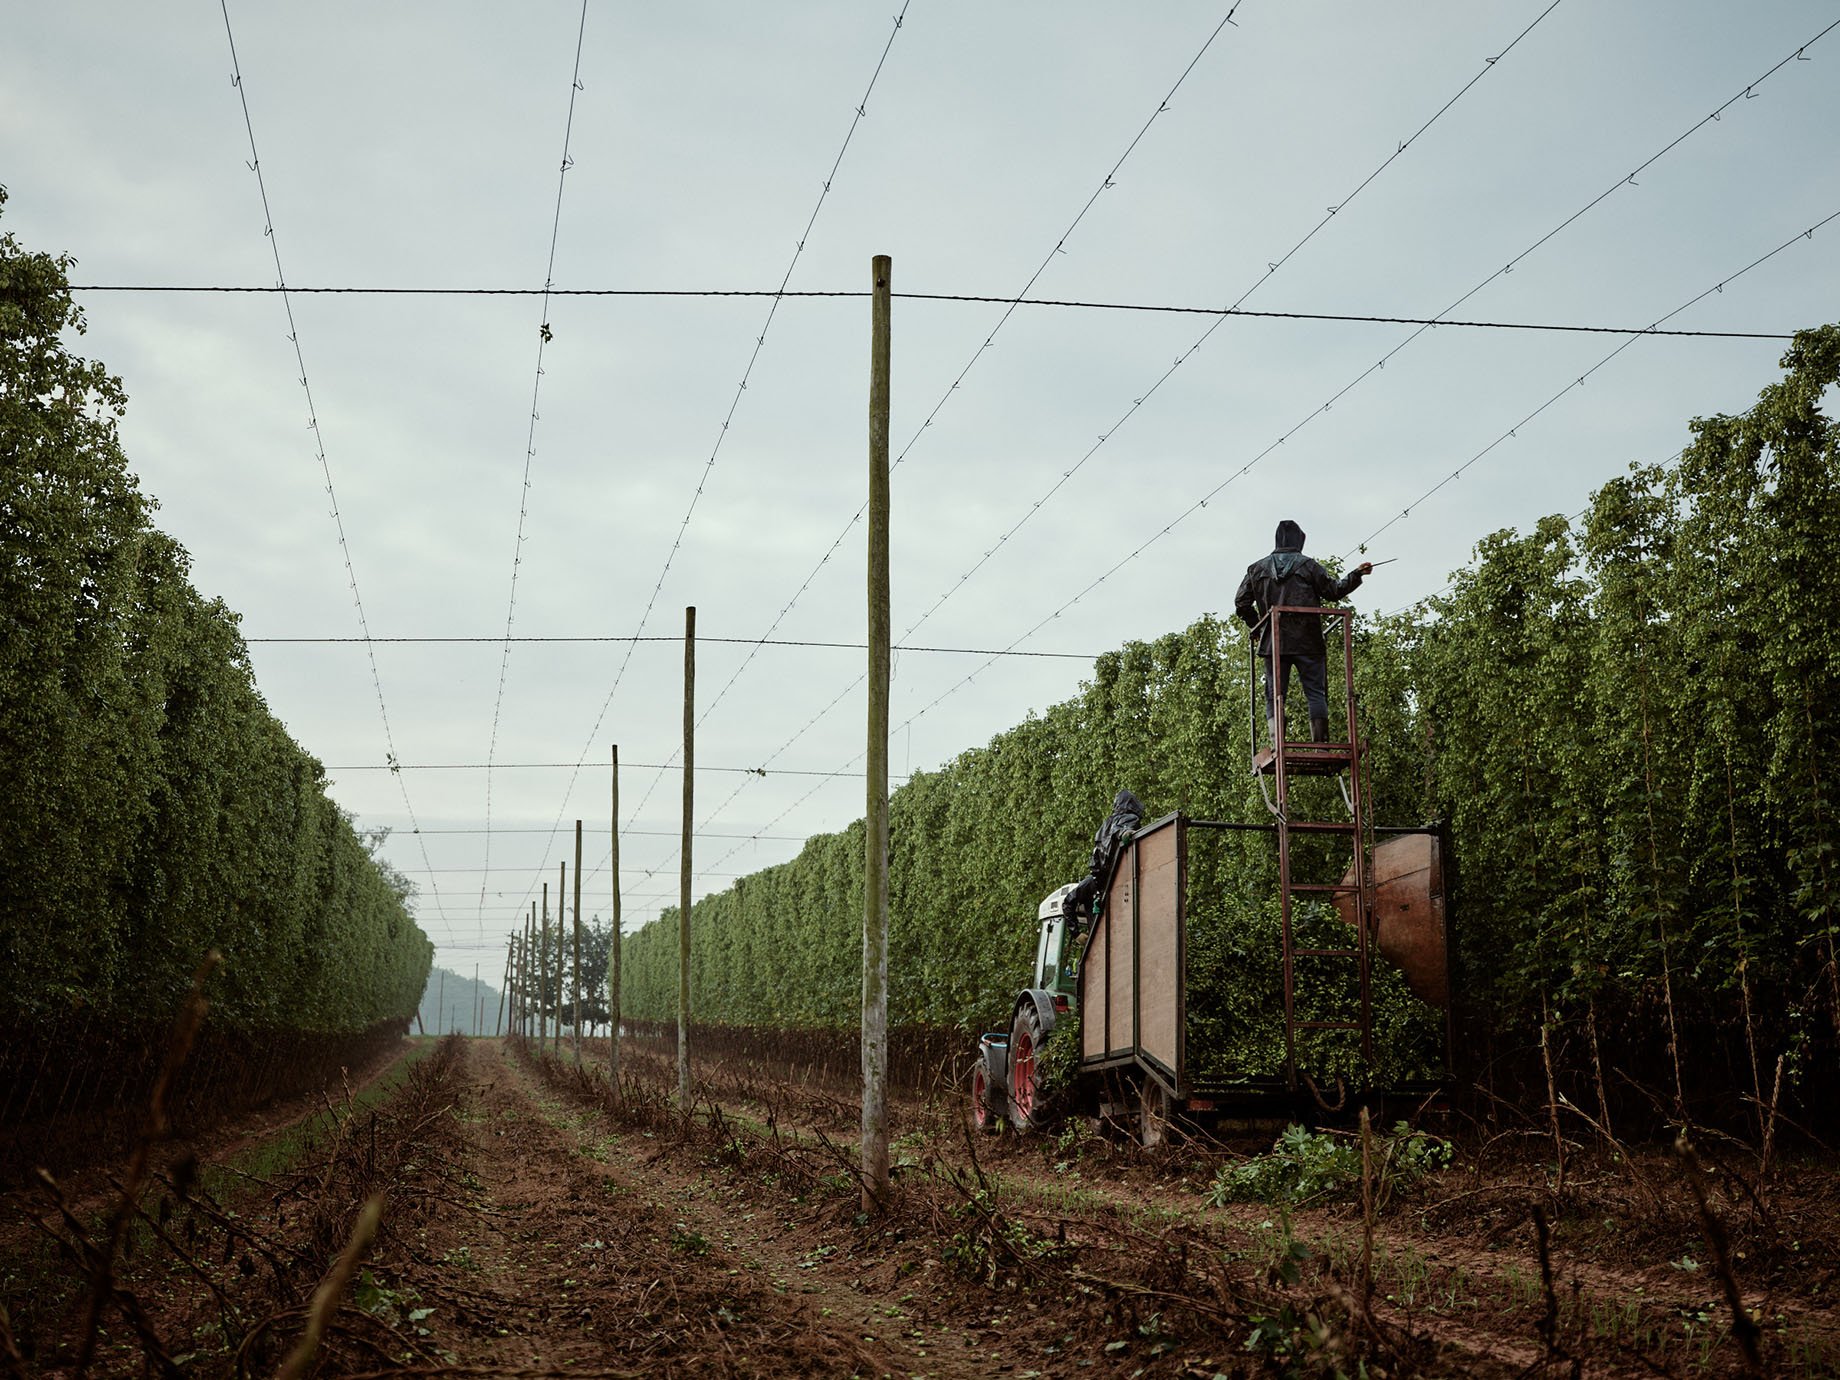 Stocks Farm hop harvest shot by Duncan Elliott